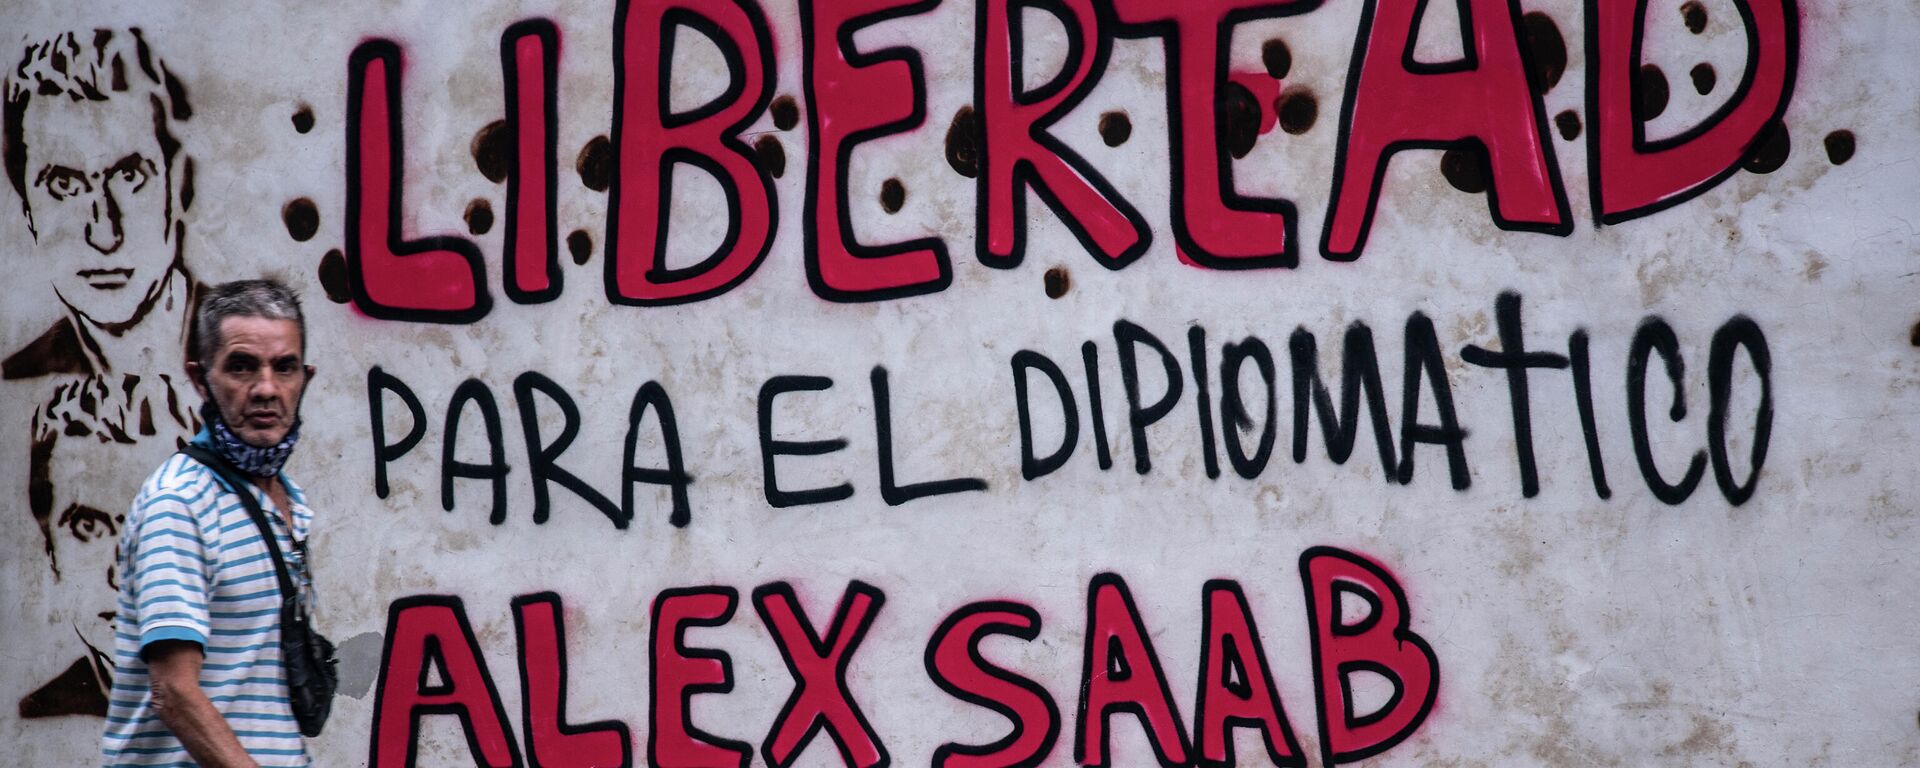 Grafiti que reclama la libertad de Alex Saab, detenido en Cabo Verde - Sputnik Mundo, 1920, 23.06.2021